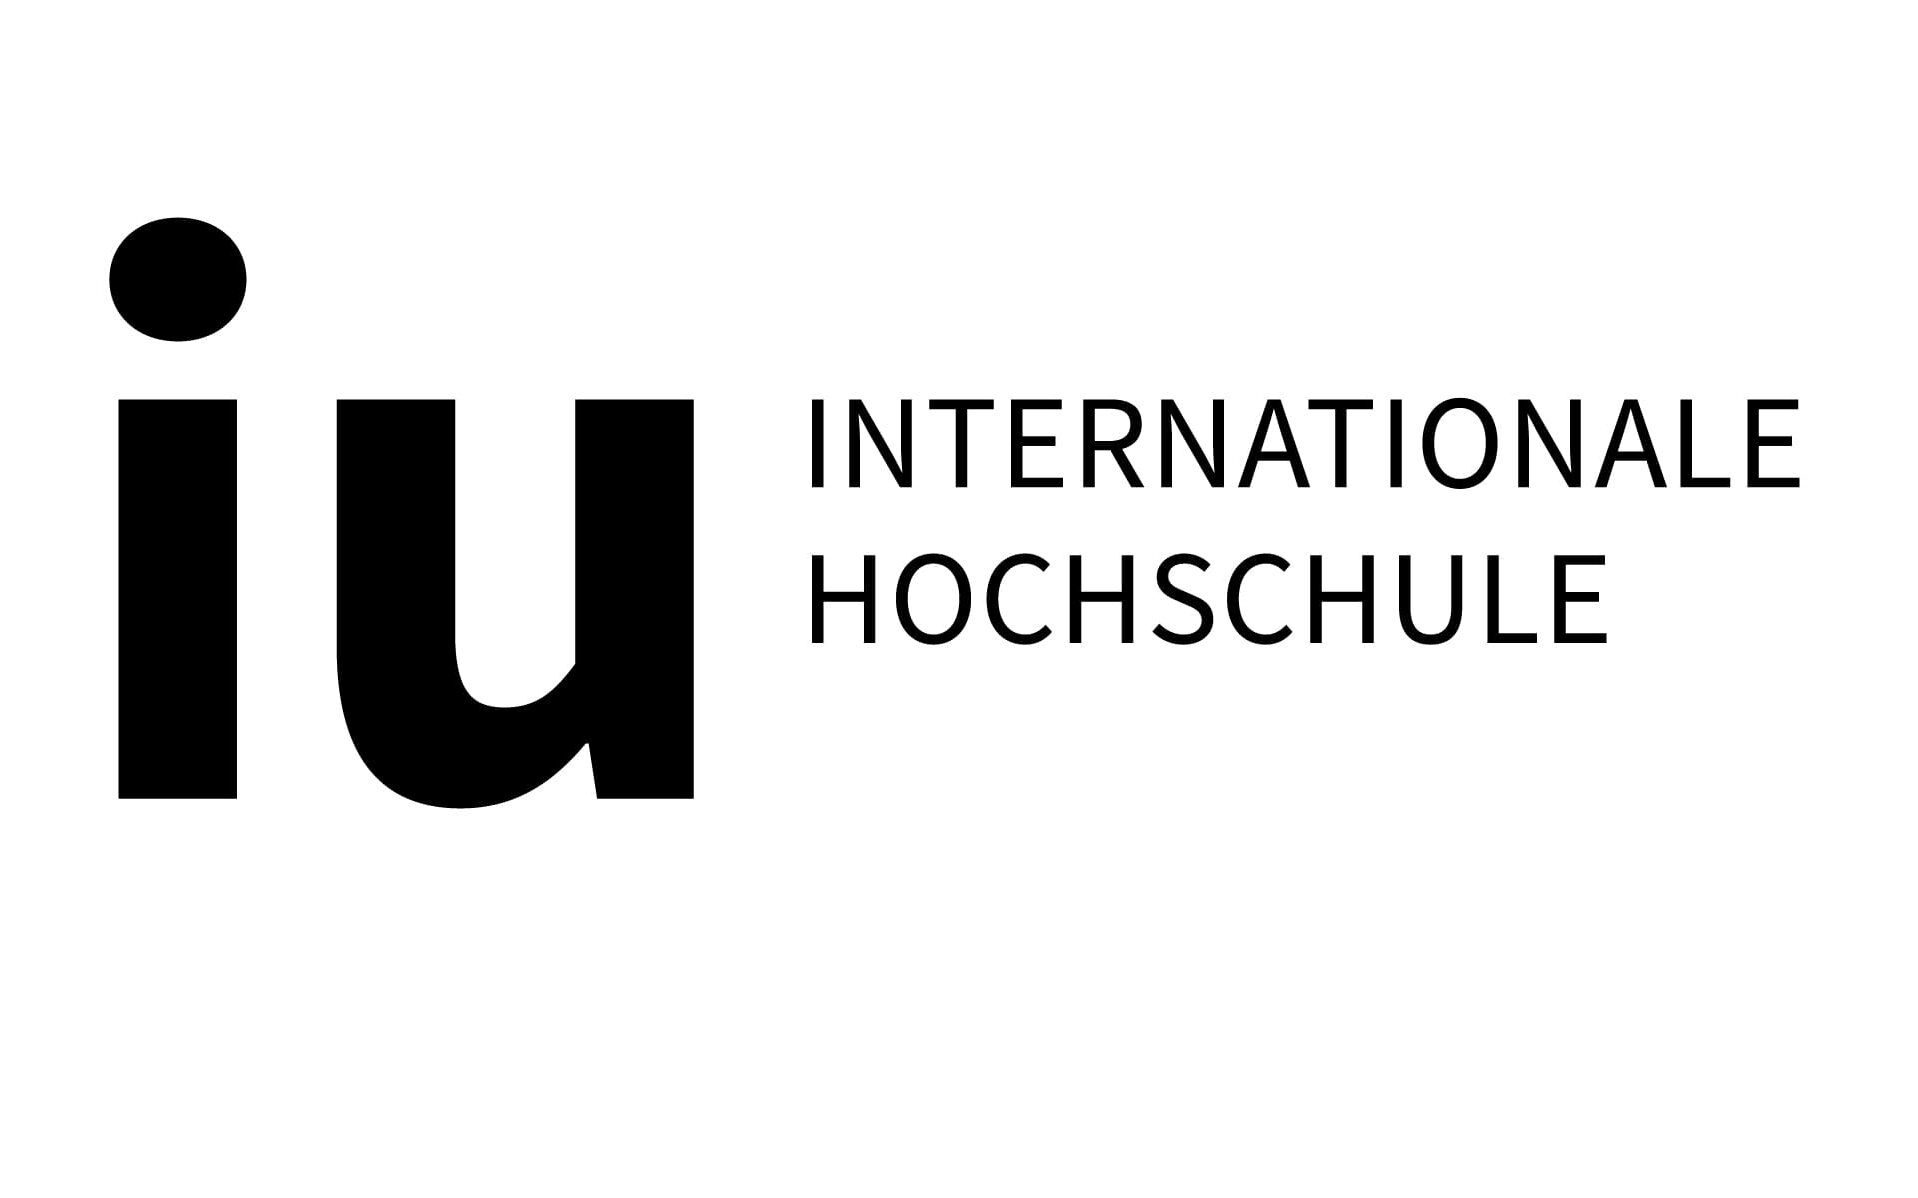 Internationale Hochschule